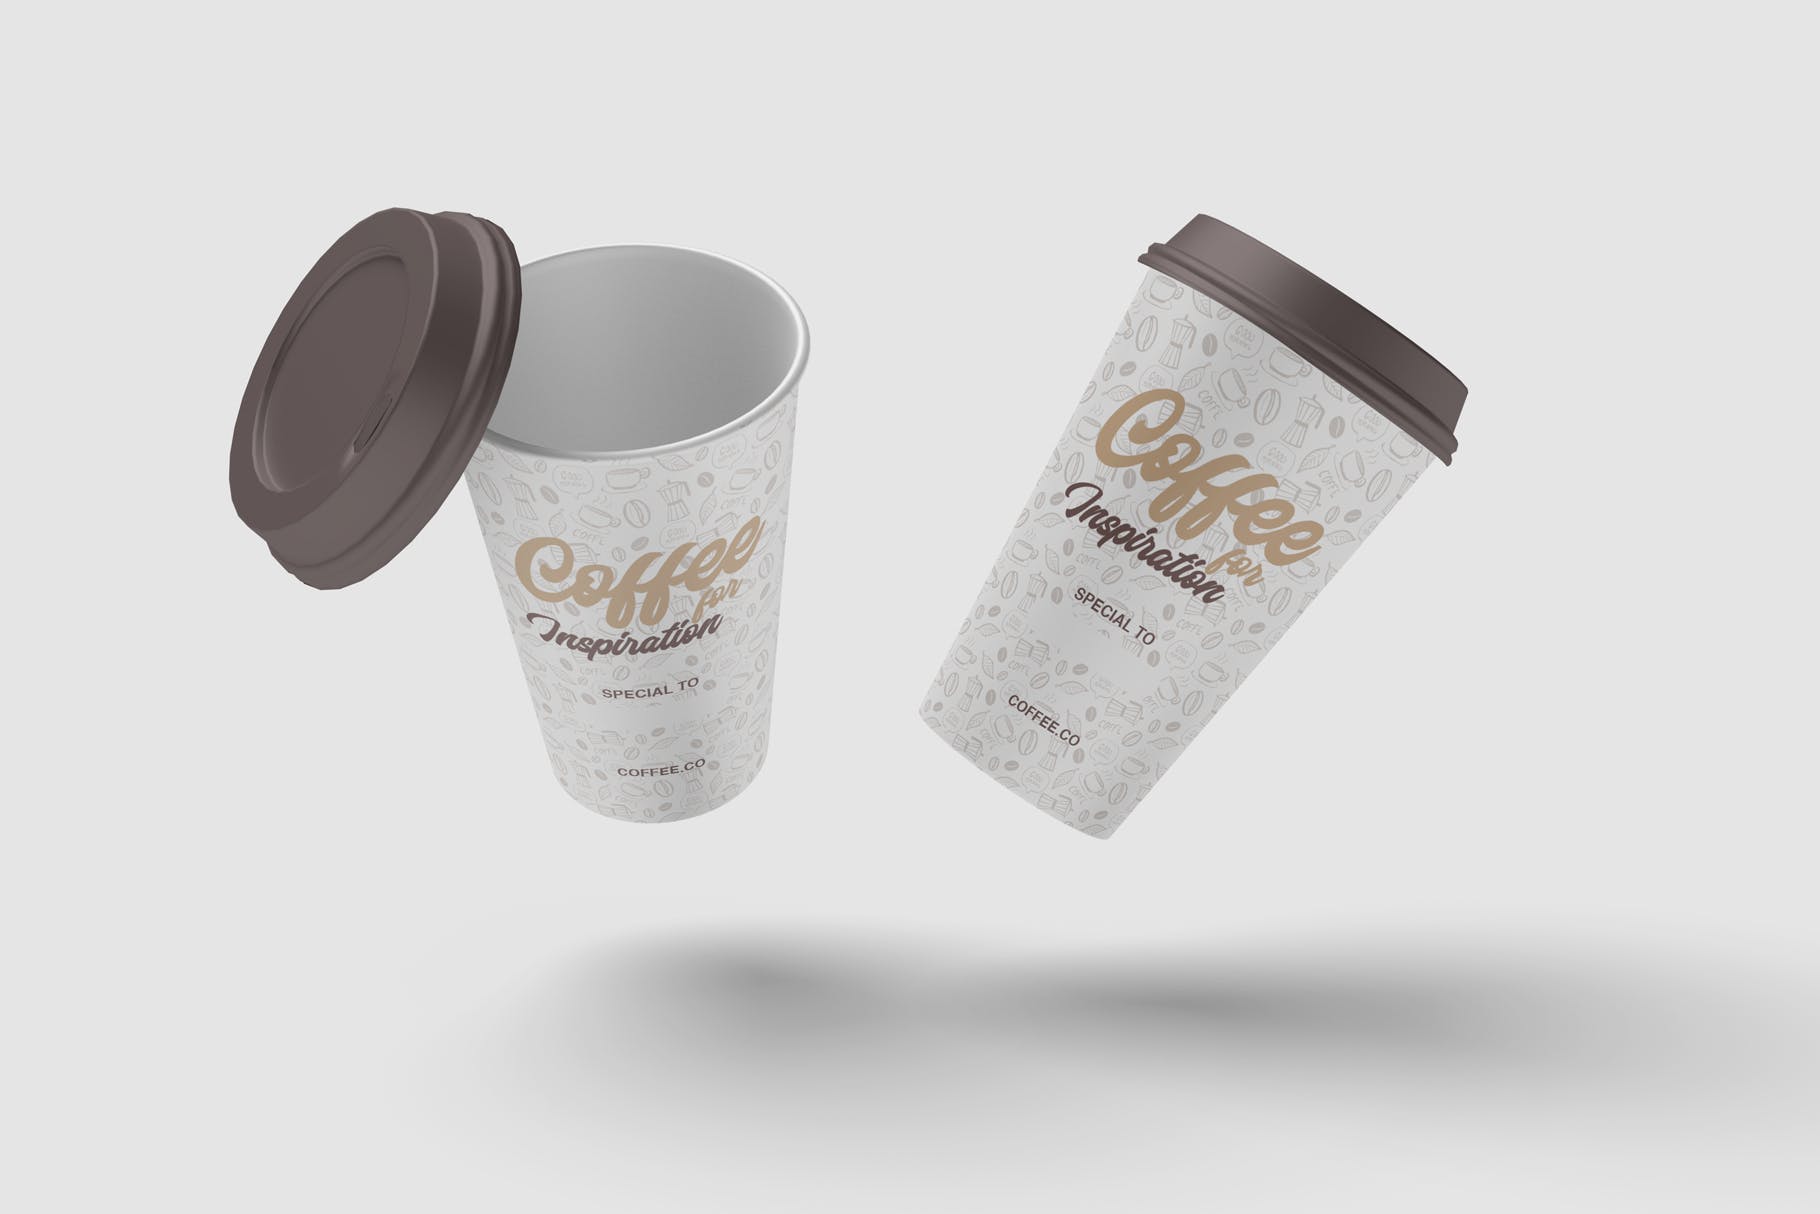 咖啡纸杯外观图案设计预览第一素材精选 Cup of Coffee Mockup插图(3)